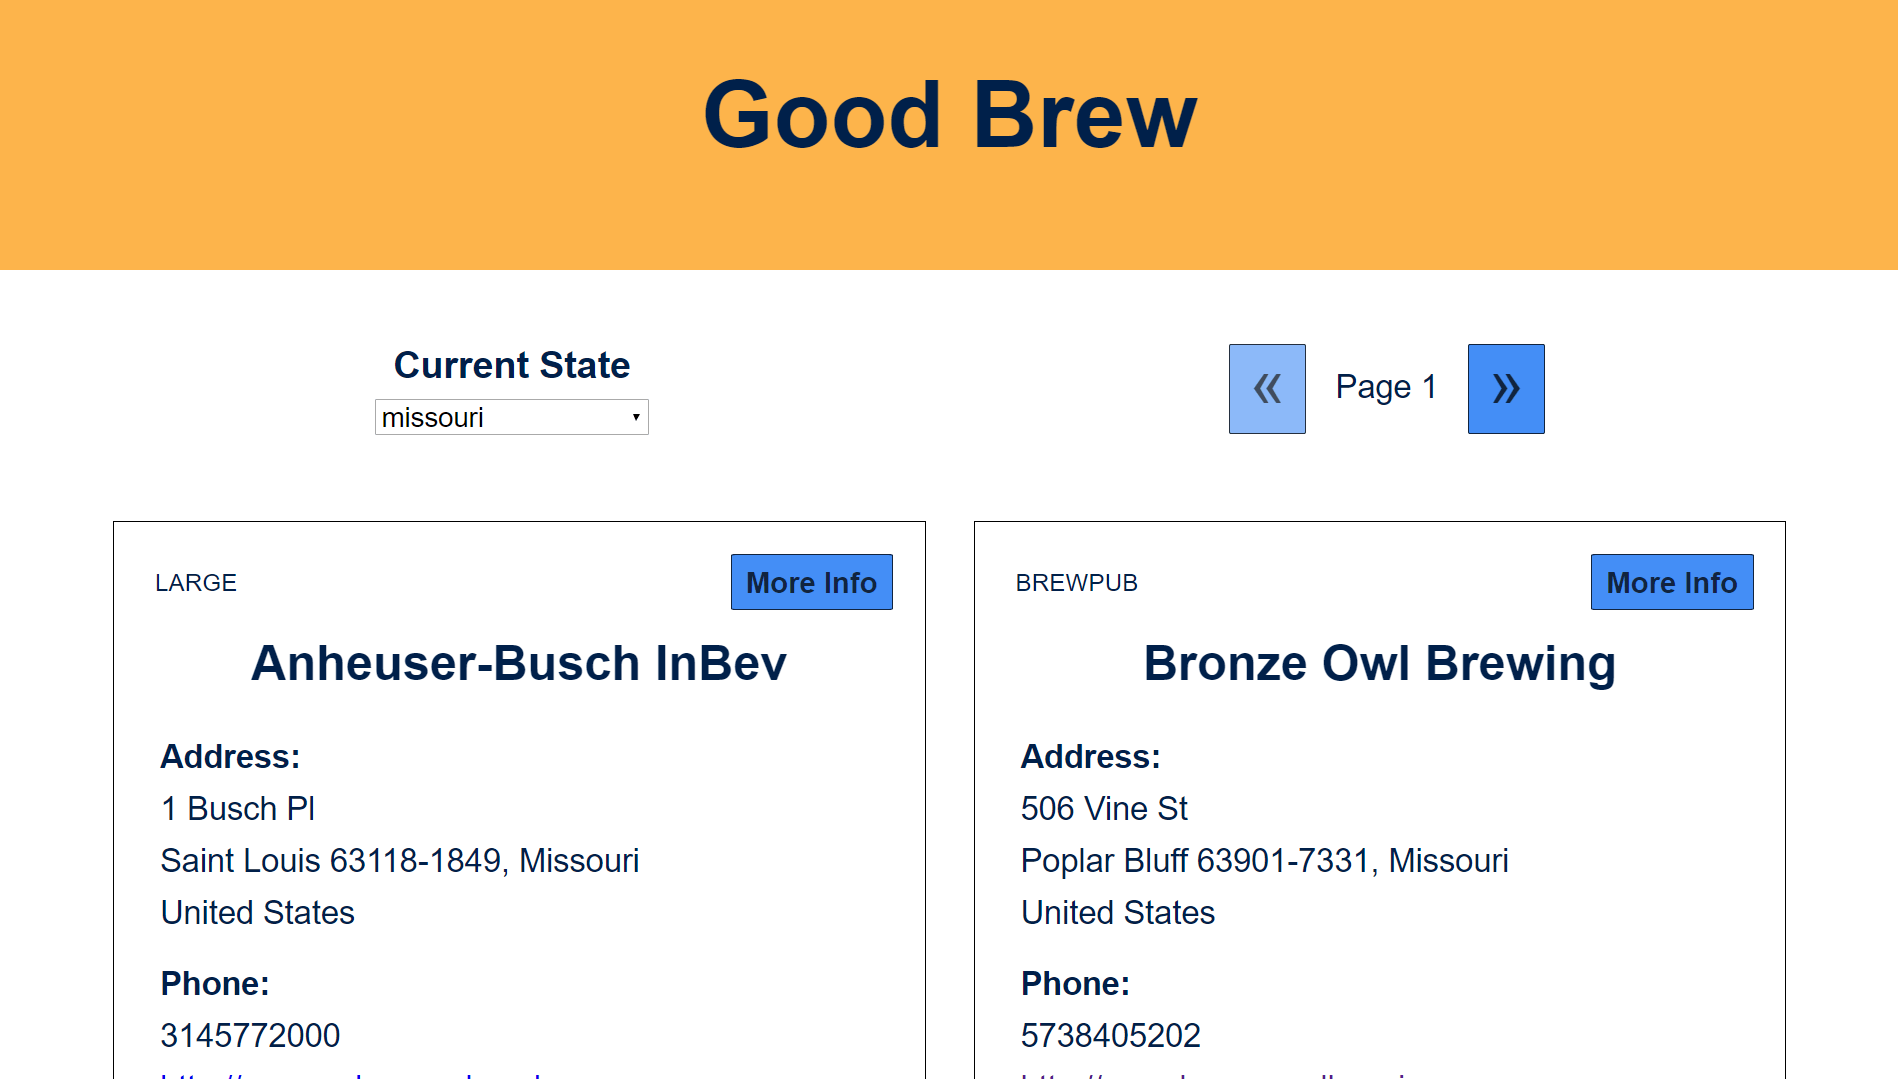 Good Brew